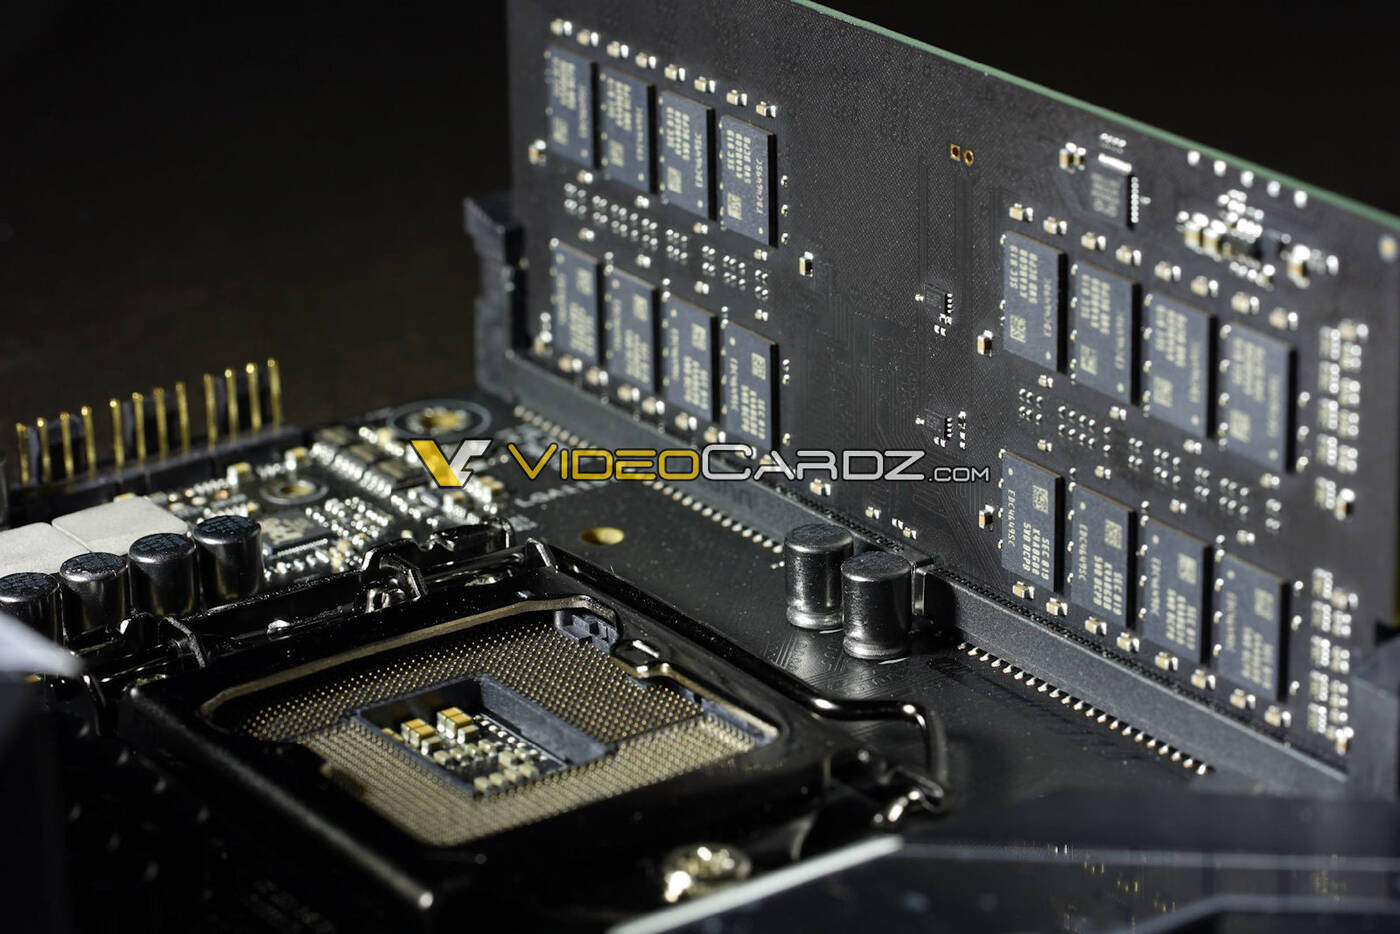 DC DIMM oferuje dwukrotnie większą pojemność modułu RAM